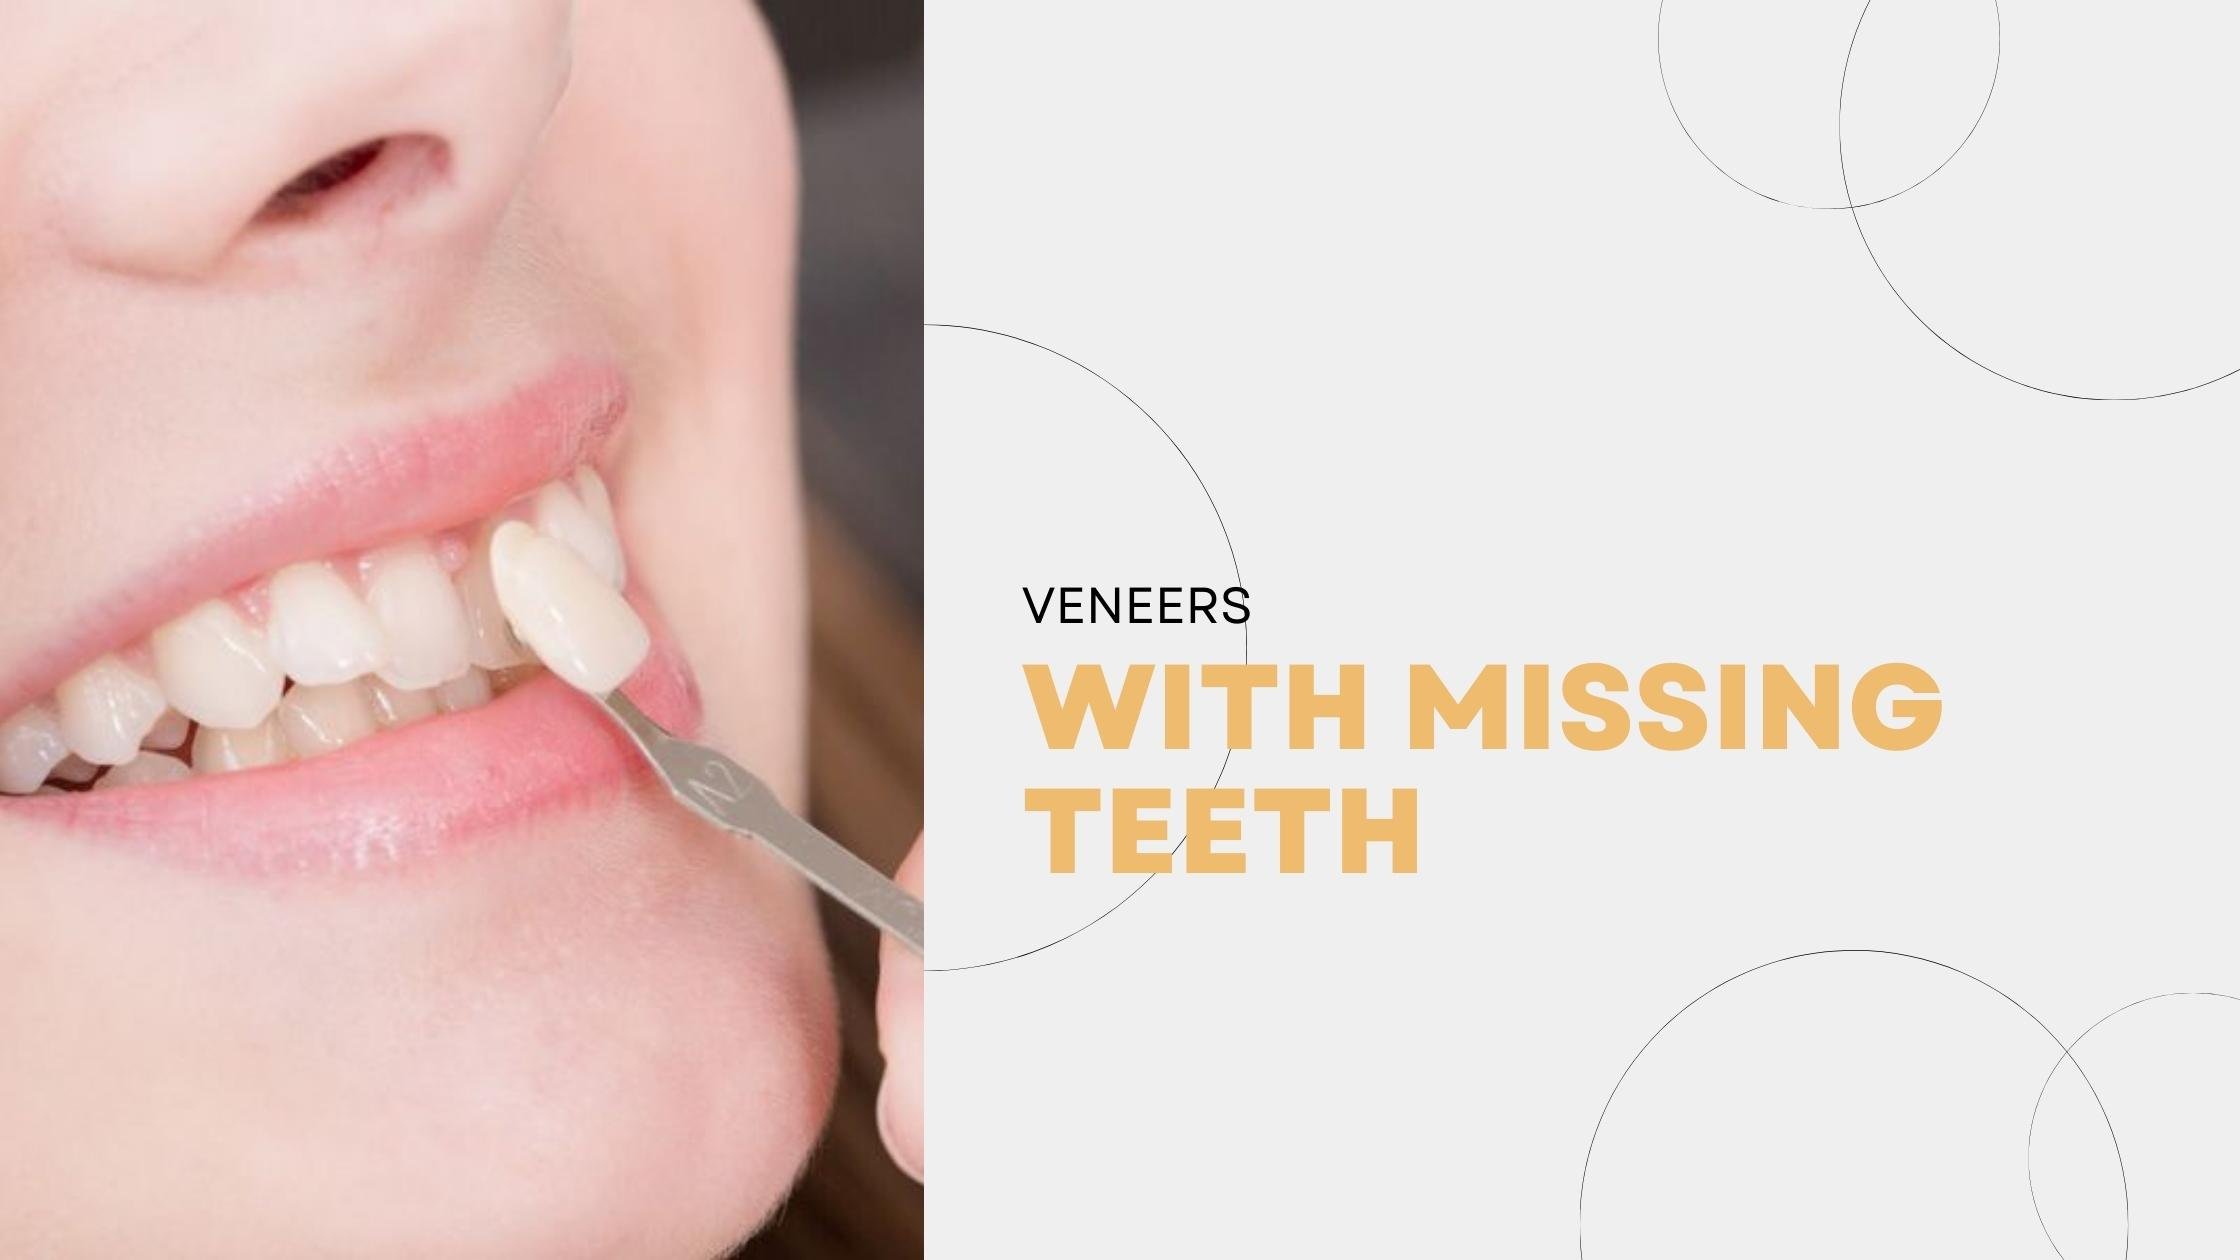 Veneers With Missing Teeth